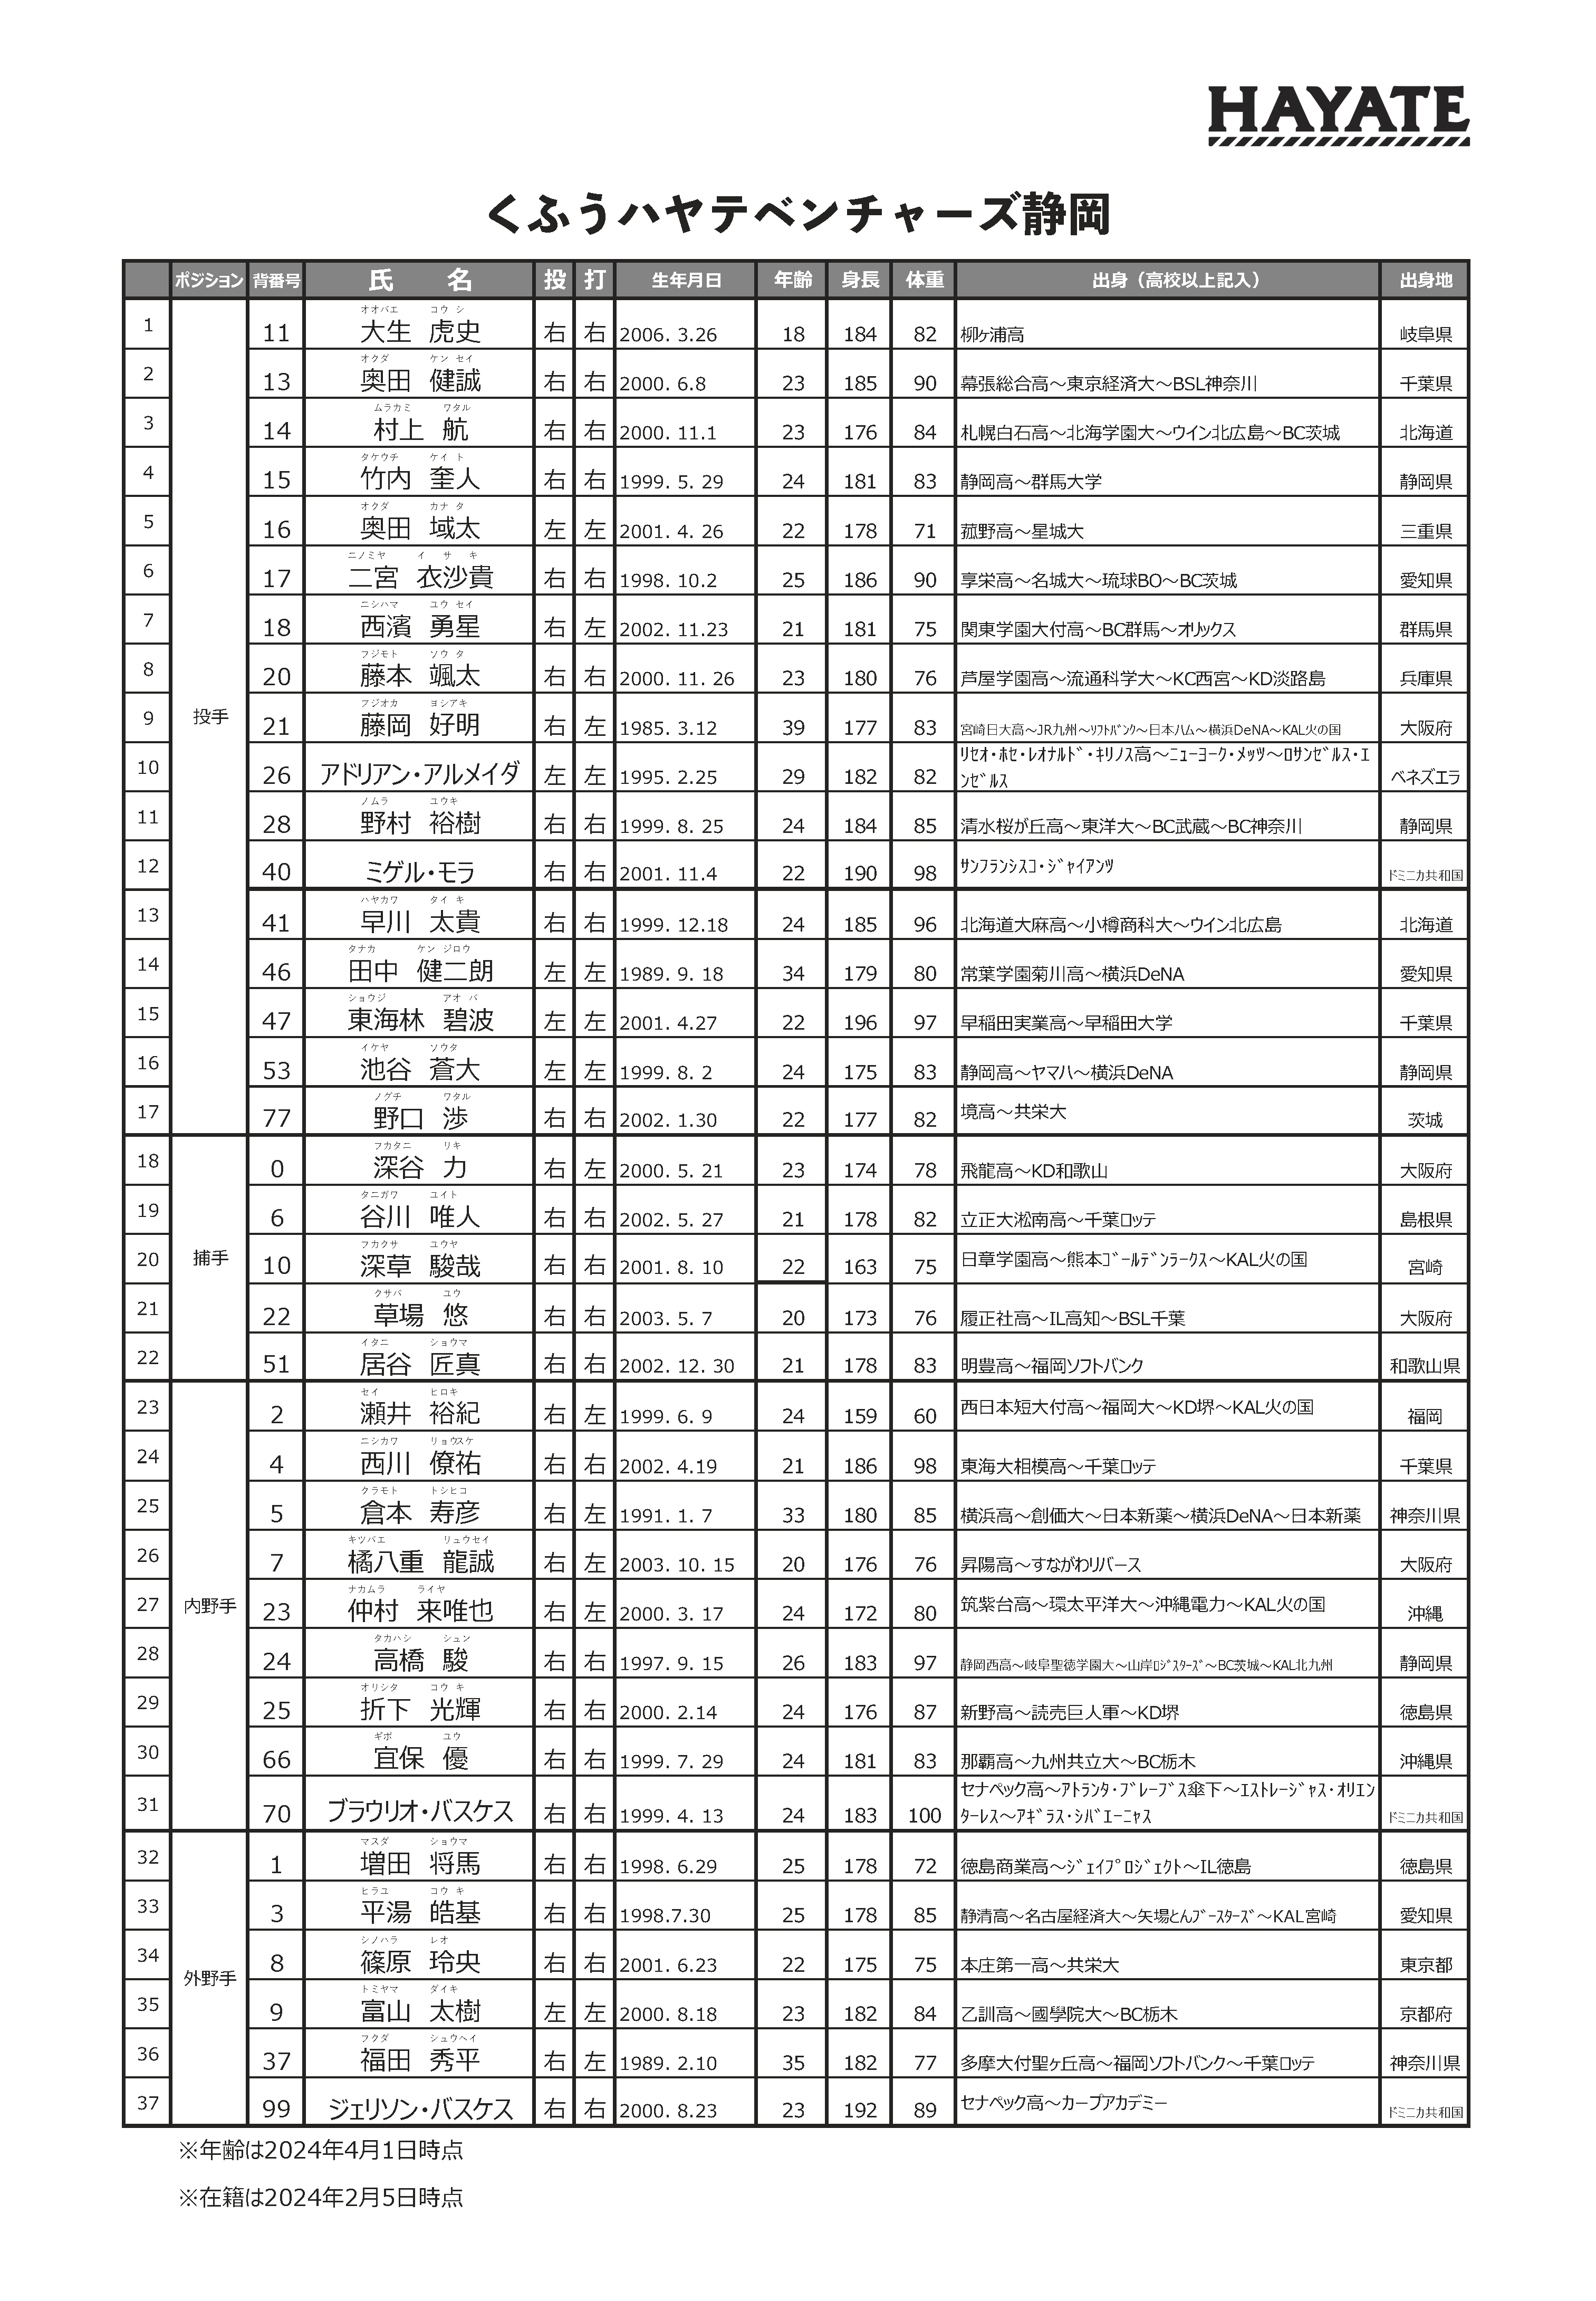 ハヤテグループ くふうハヤテベンチャーズ静岡 選手名簿